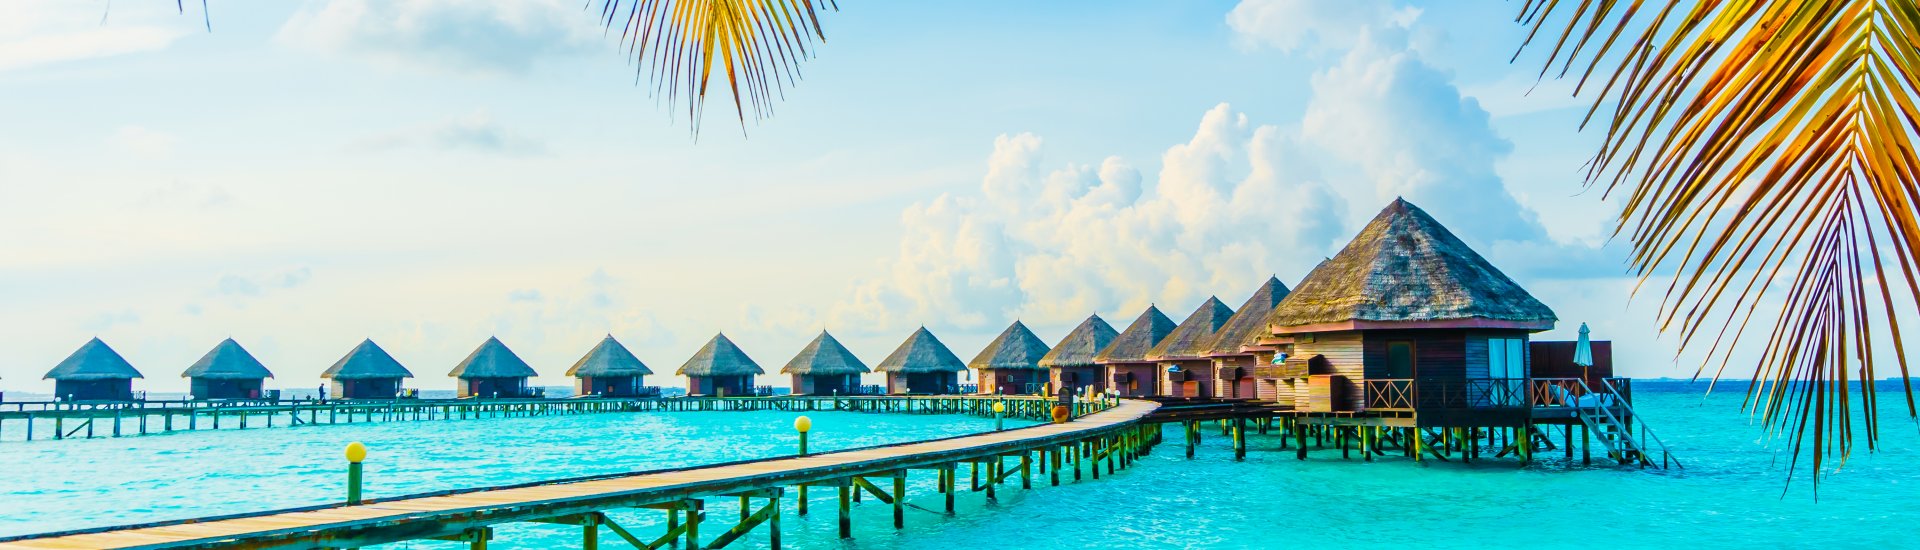 Maldives Hotels Holiday Warriors